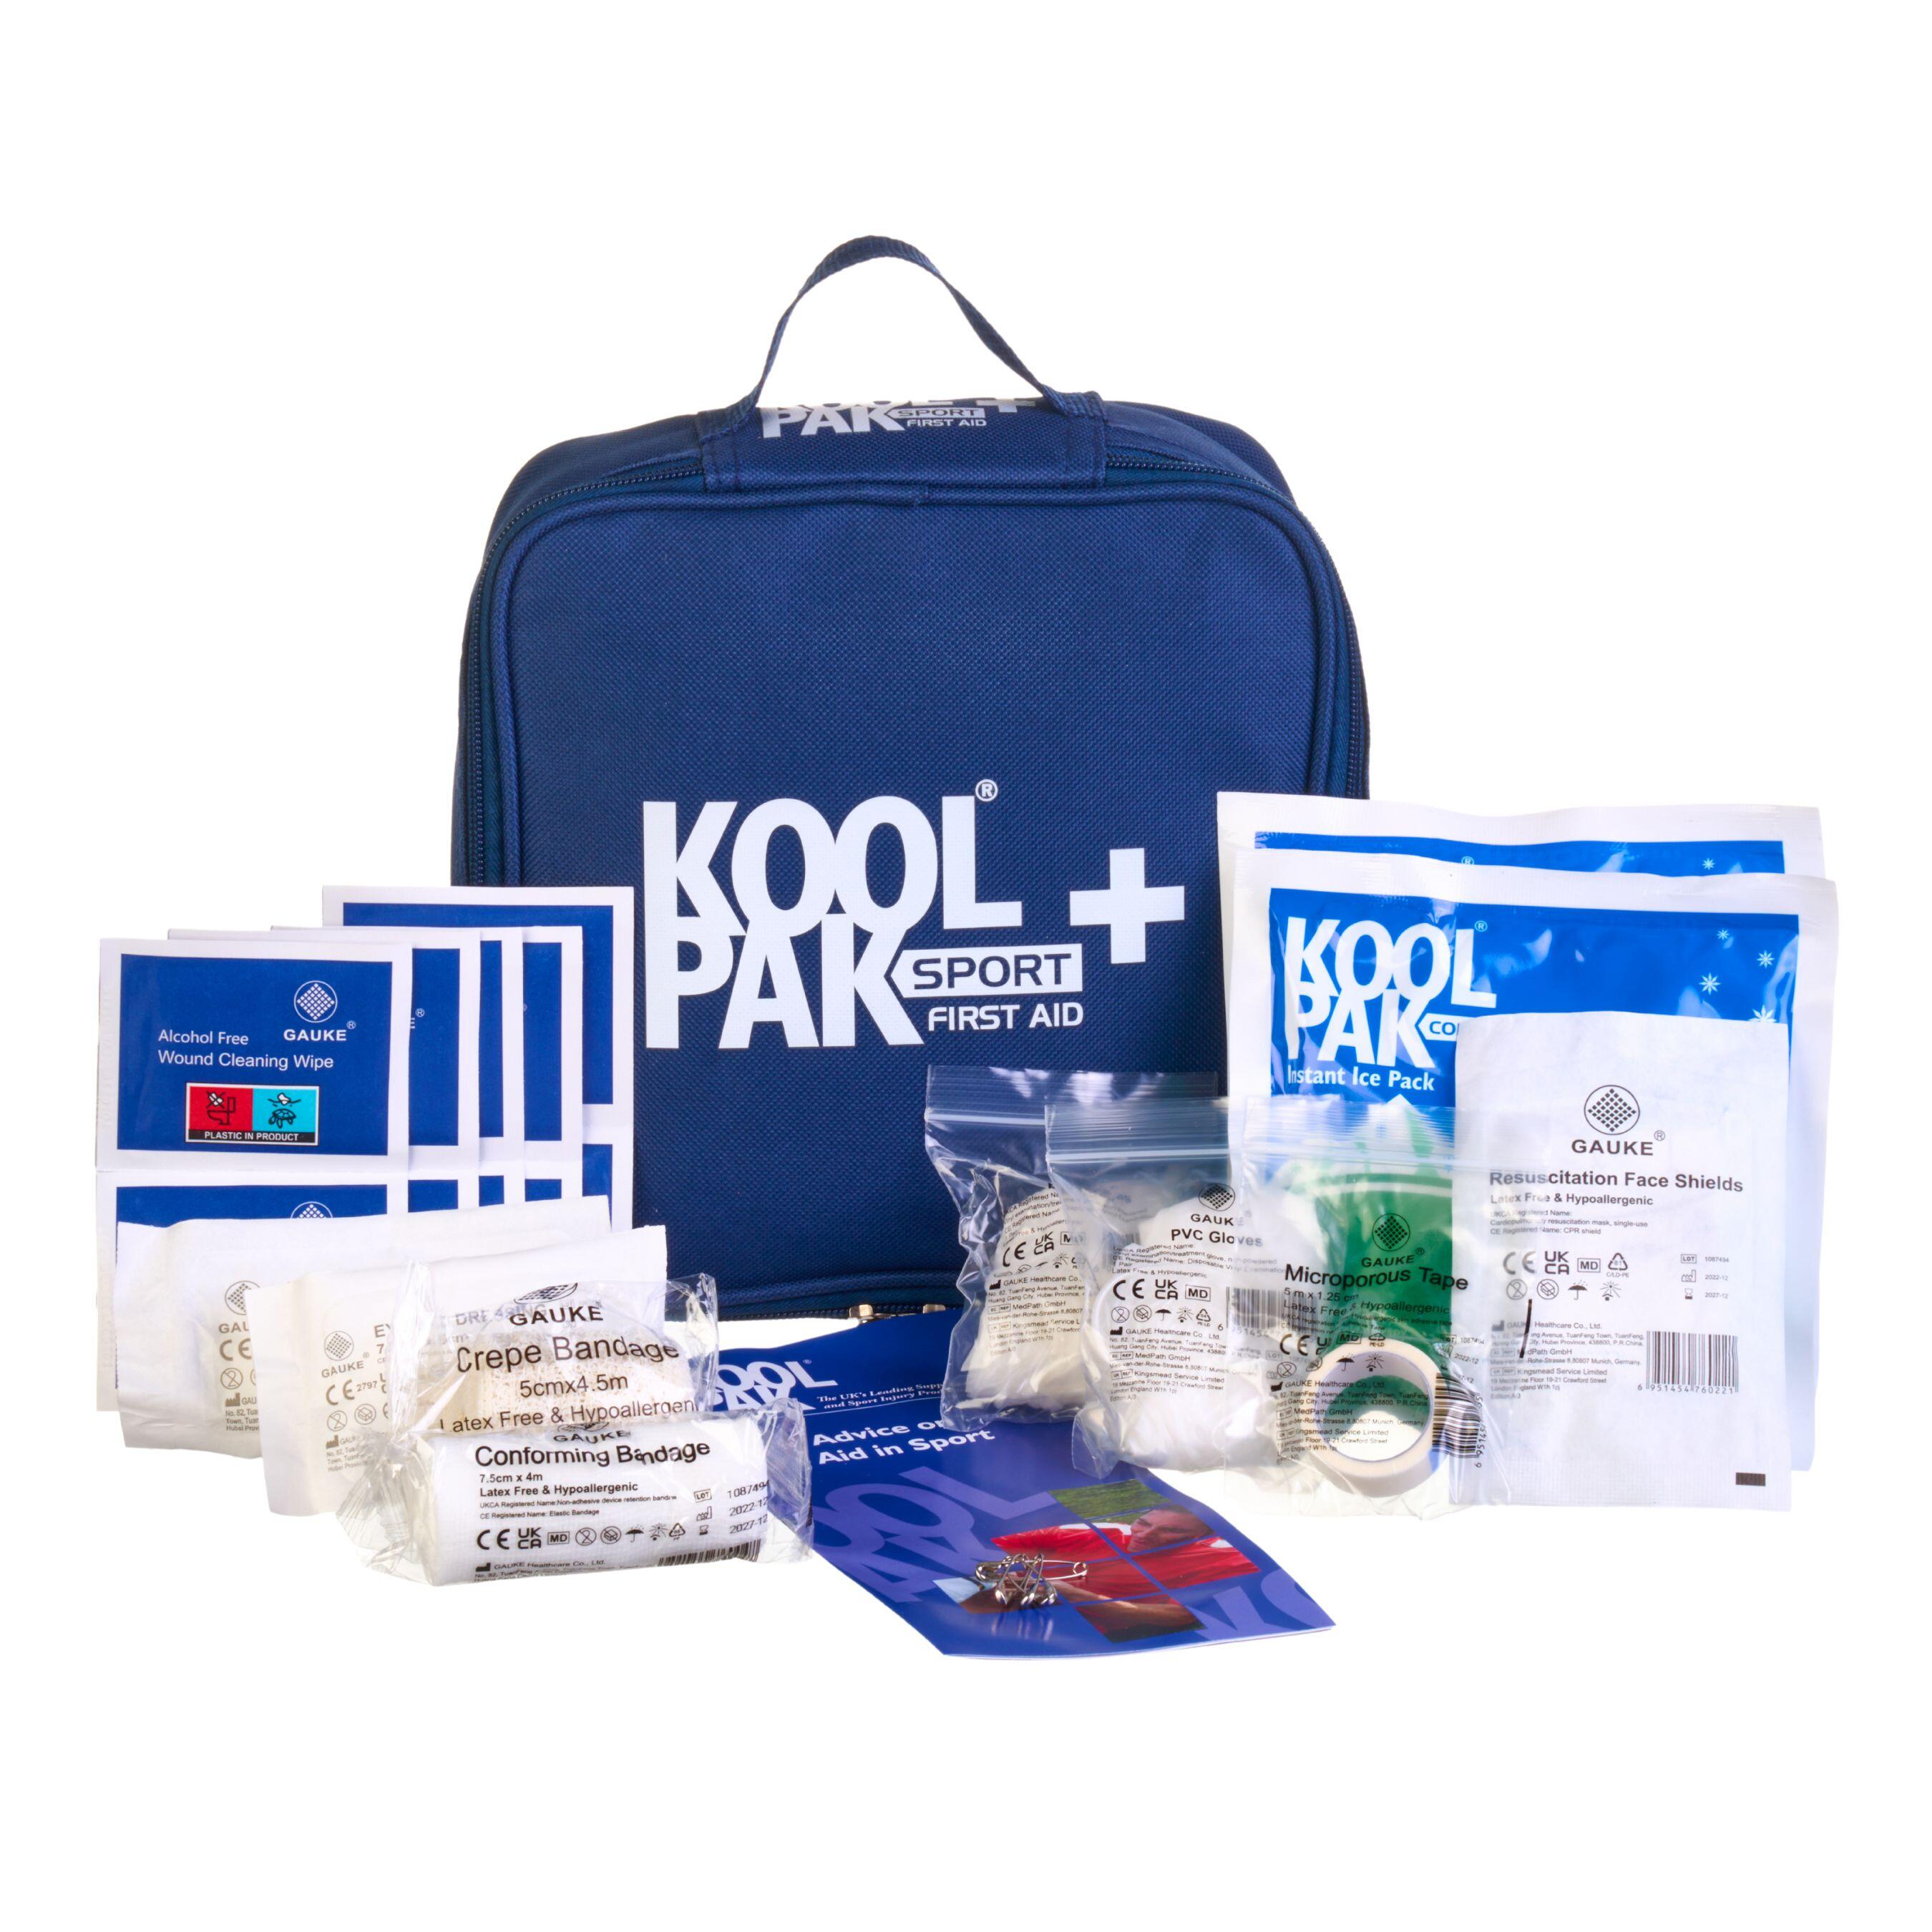 Koolpak Handy Sports First Aid Kit Injury Treatment 1/6